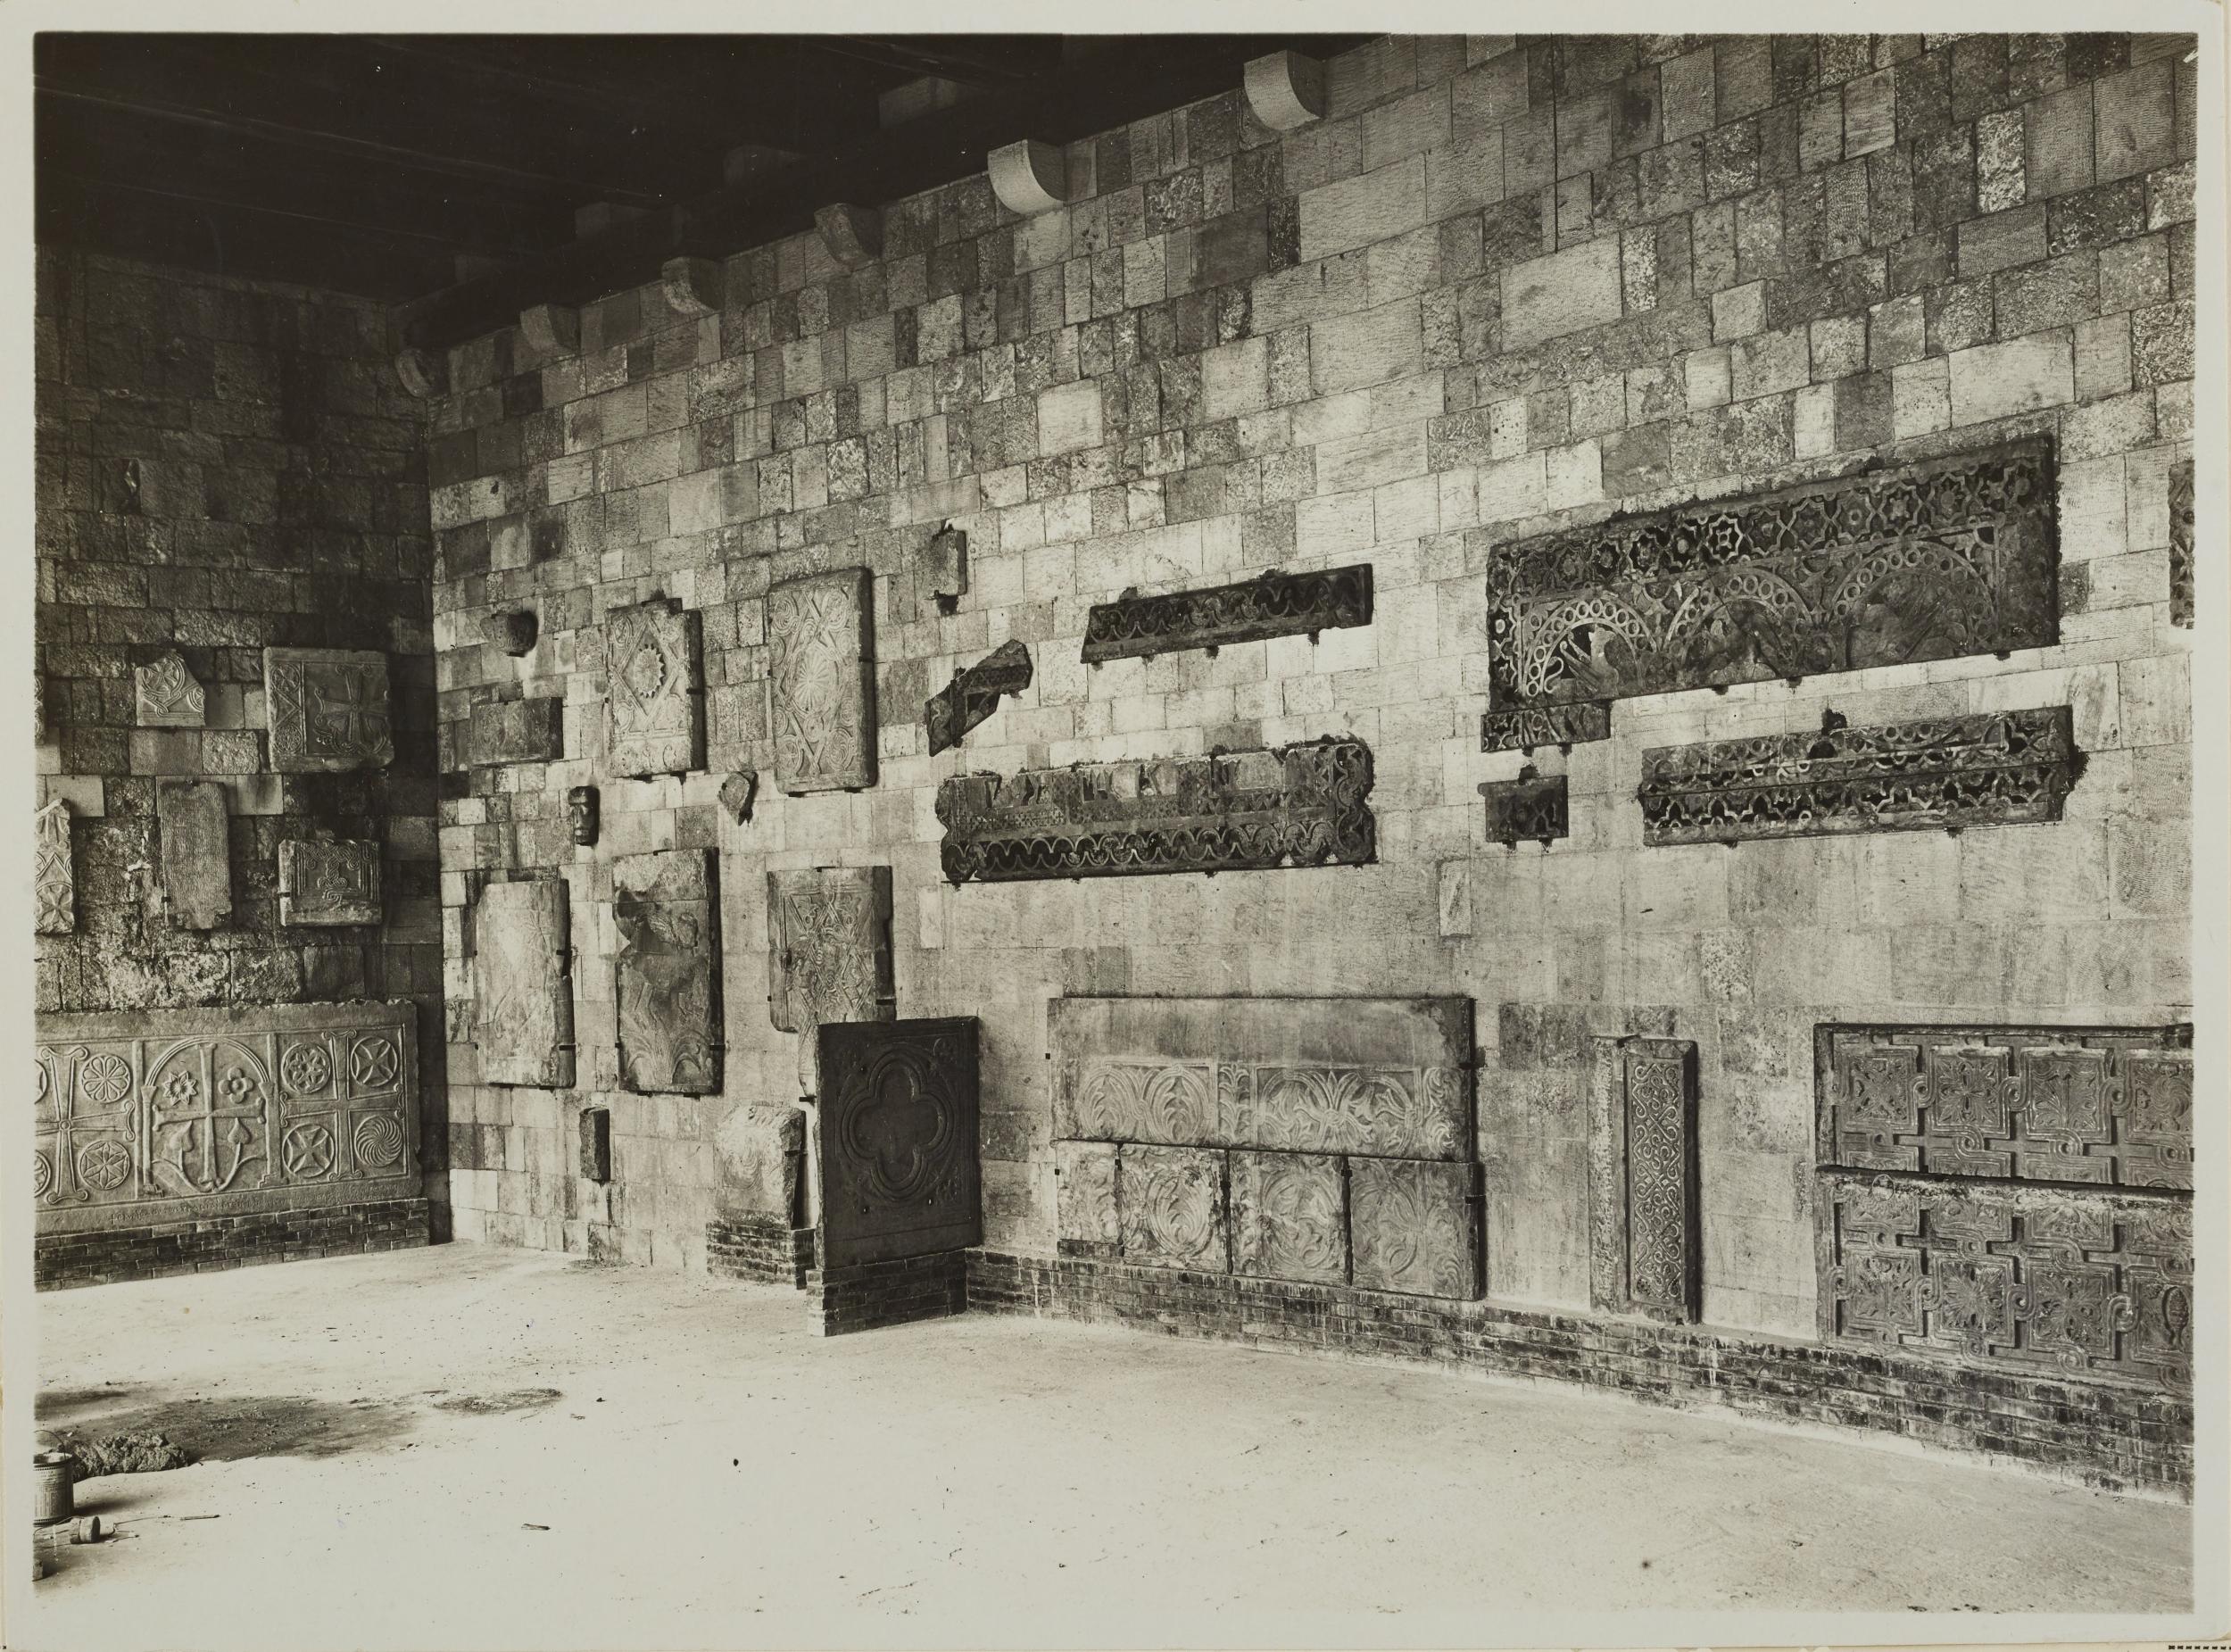 Fotografo non identificato, Bari - Basilica S. Nicola, portico dei pellegrini, frammenti di plutei, 1926-1950, gelatina ai sali d'argento/carta, MPI136873